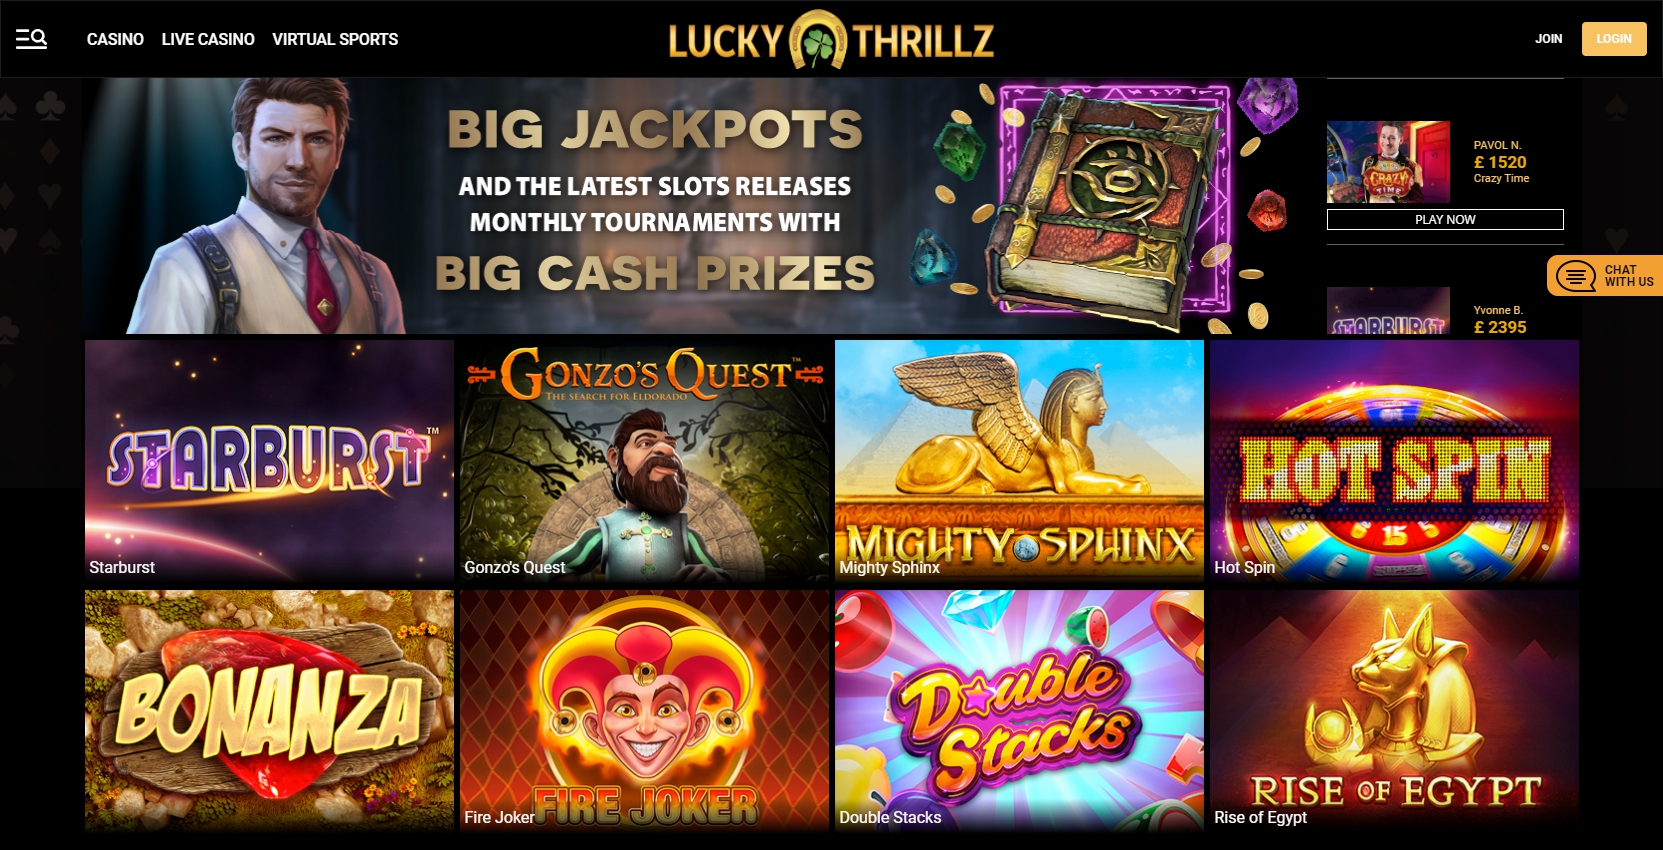 Lucky Thrillz Casino Live Dealer Games